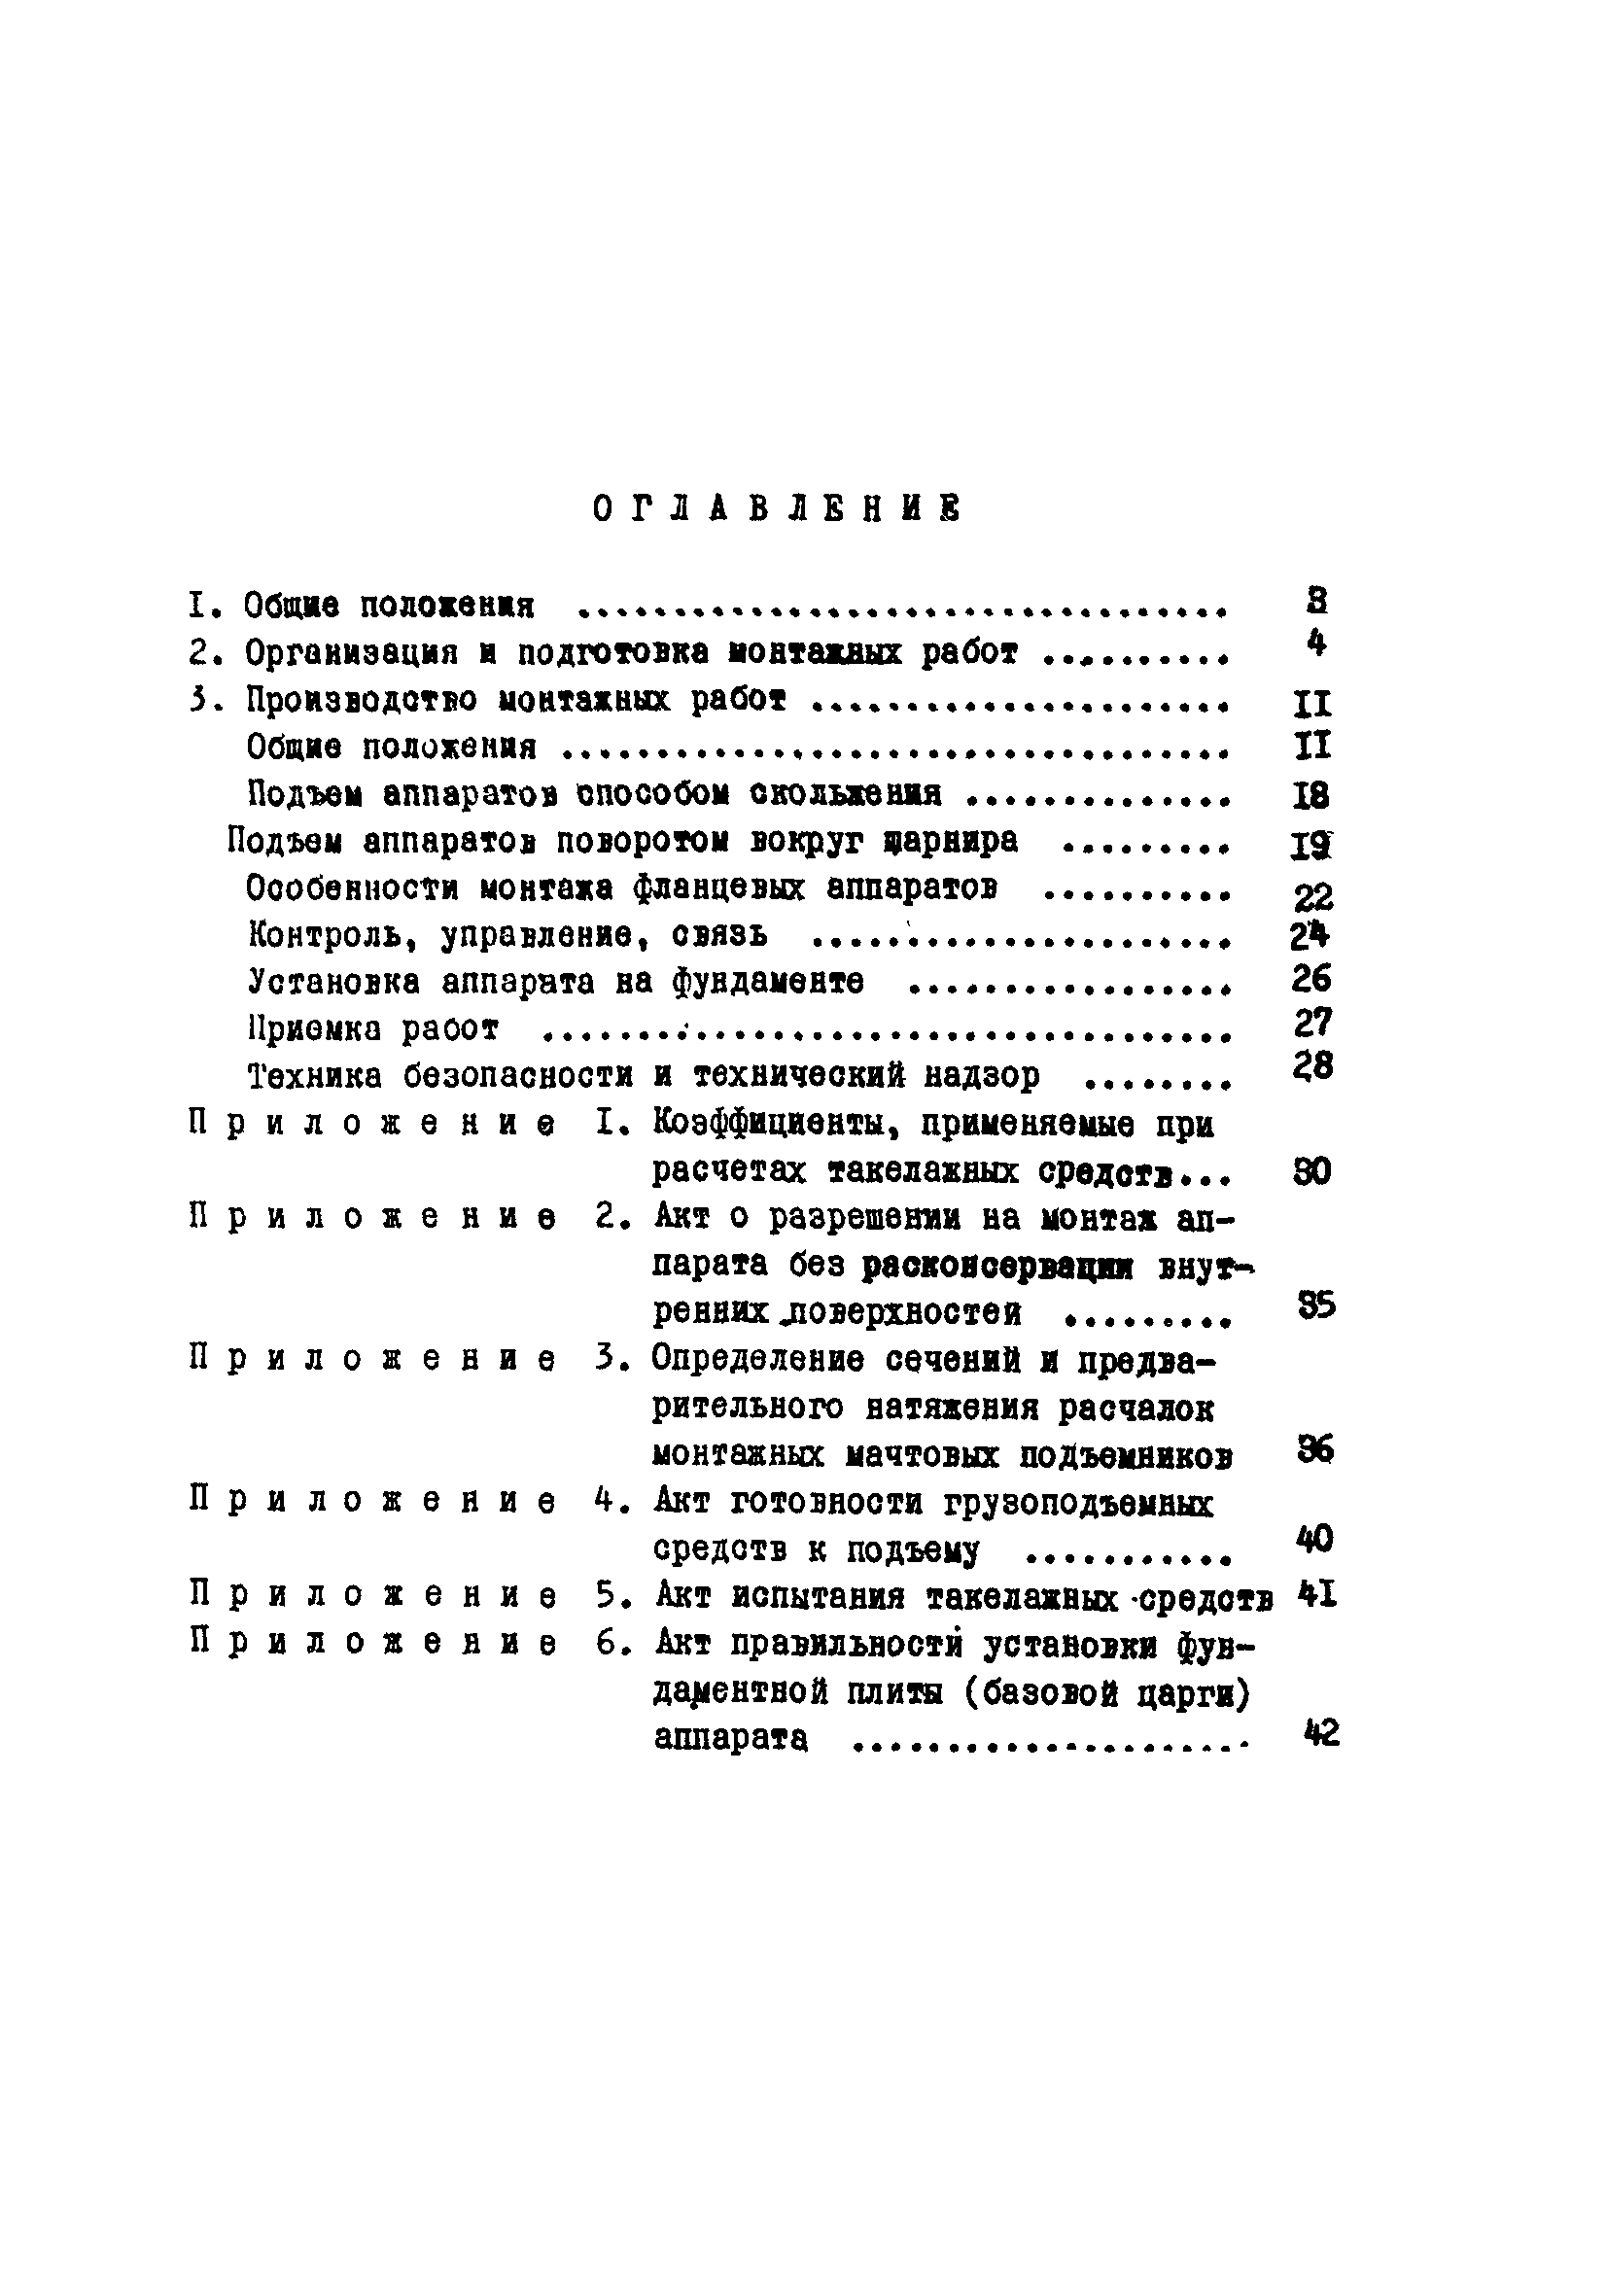 ВСН 351-75